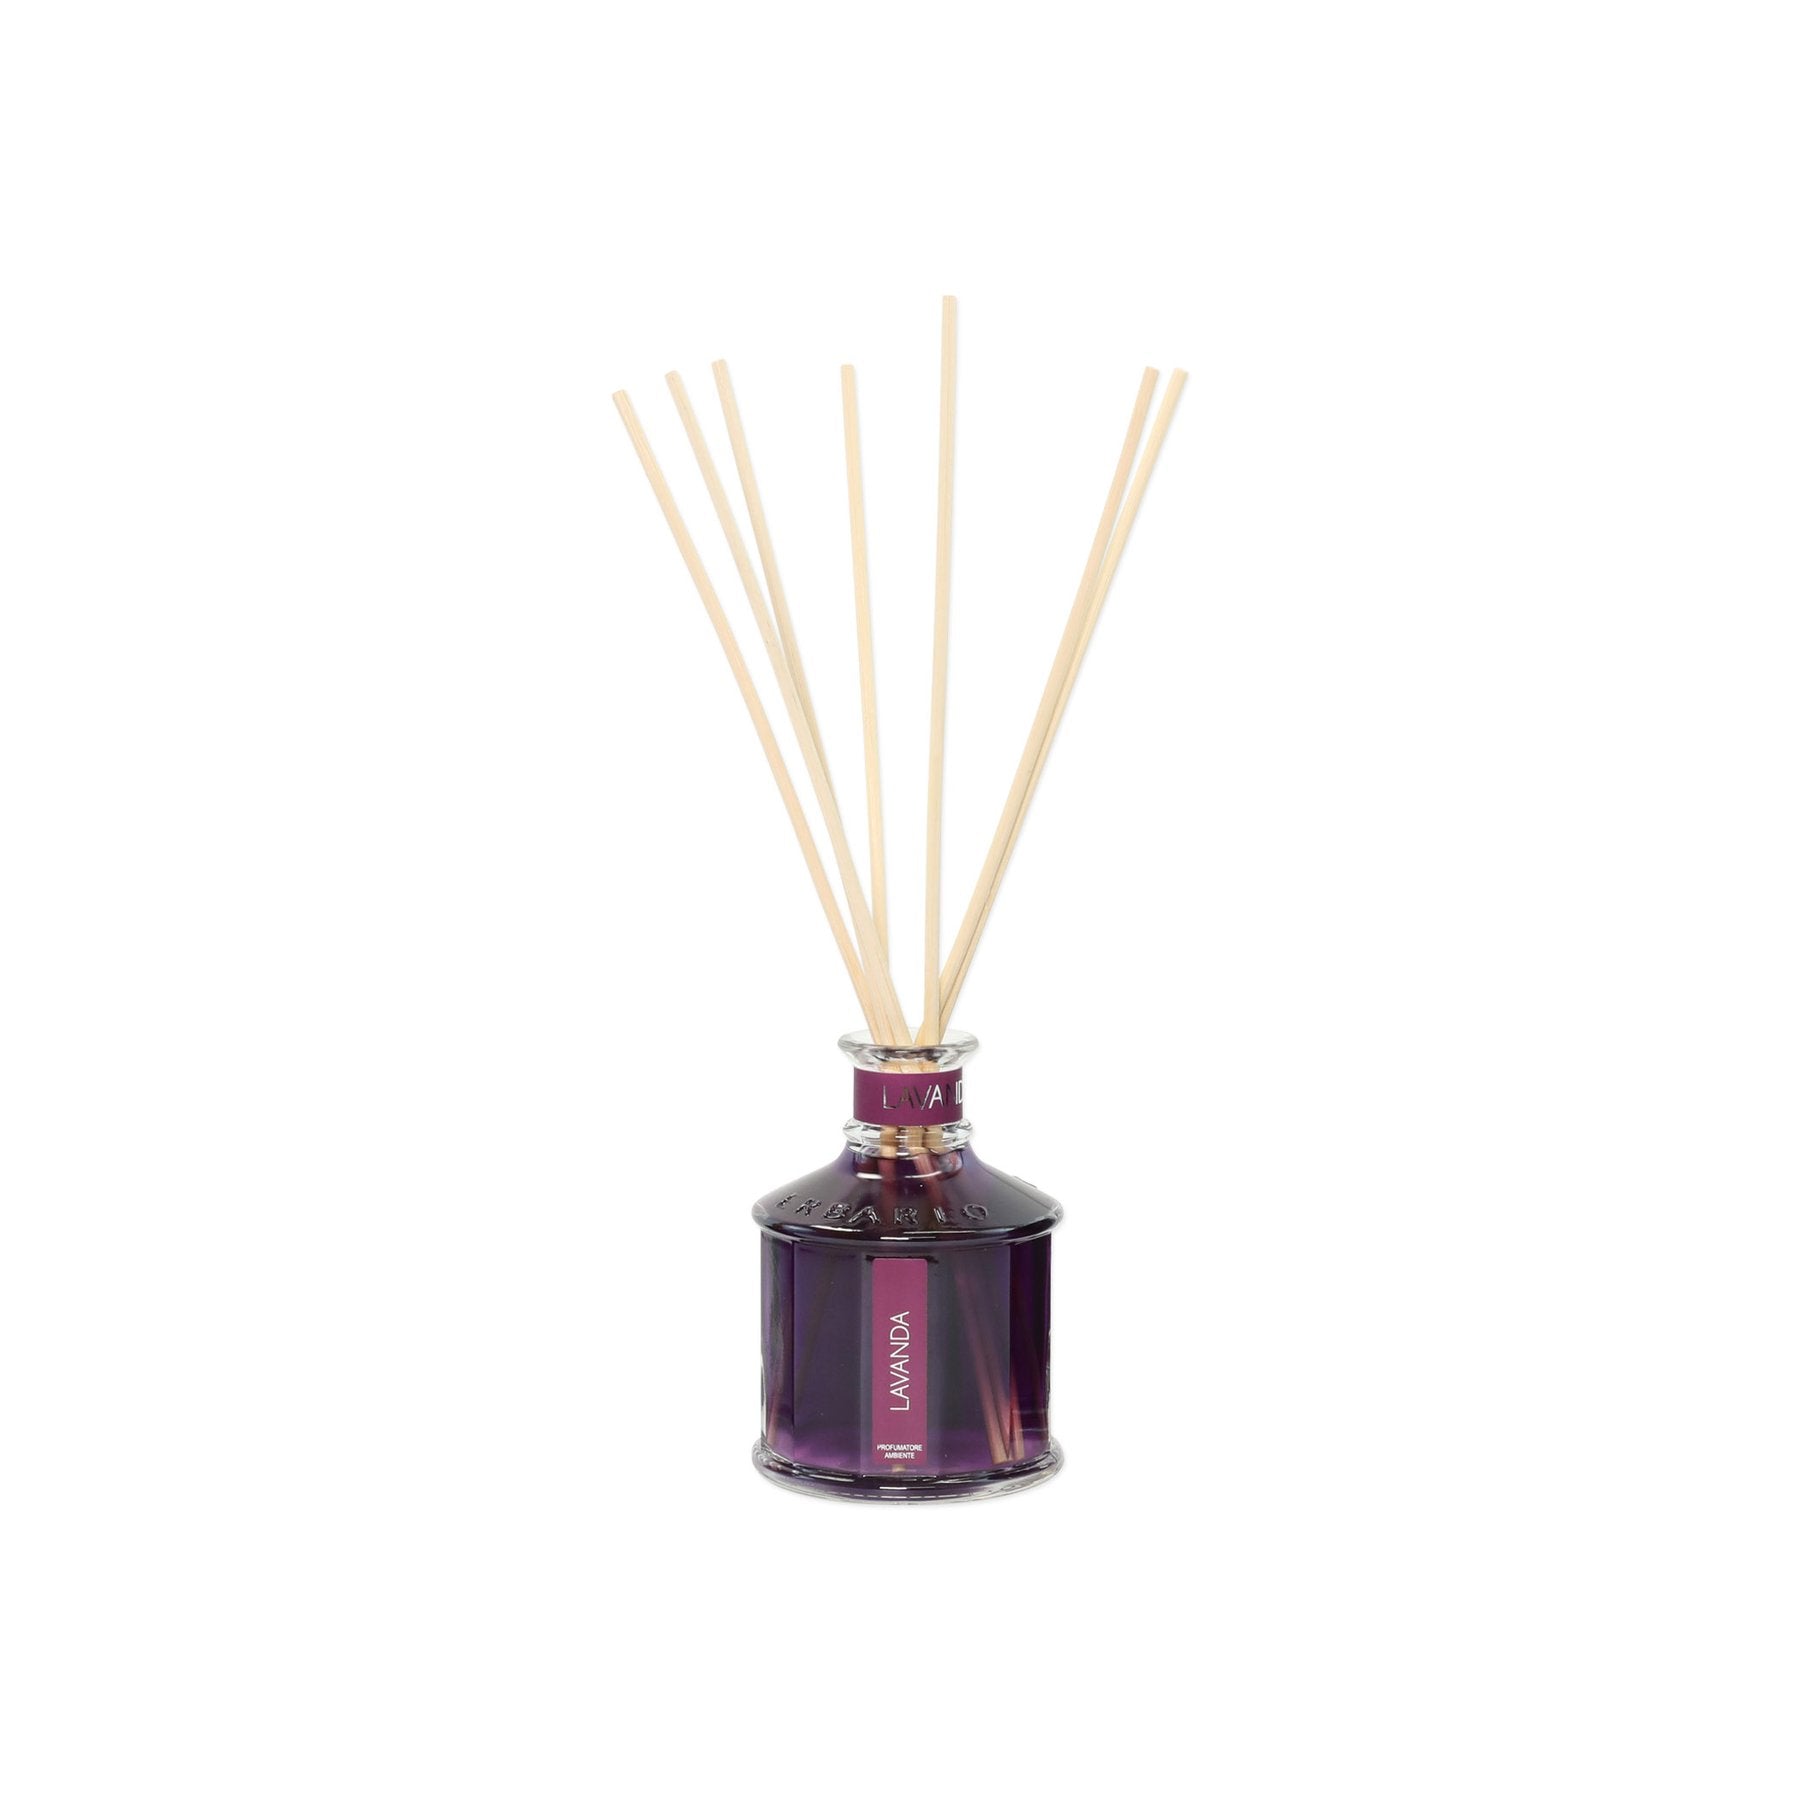 Erbario Tuscano Lavender Home Fragrance Diffuser - 250 ml